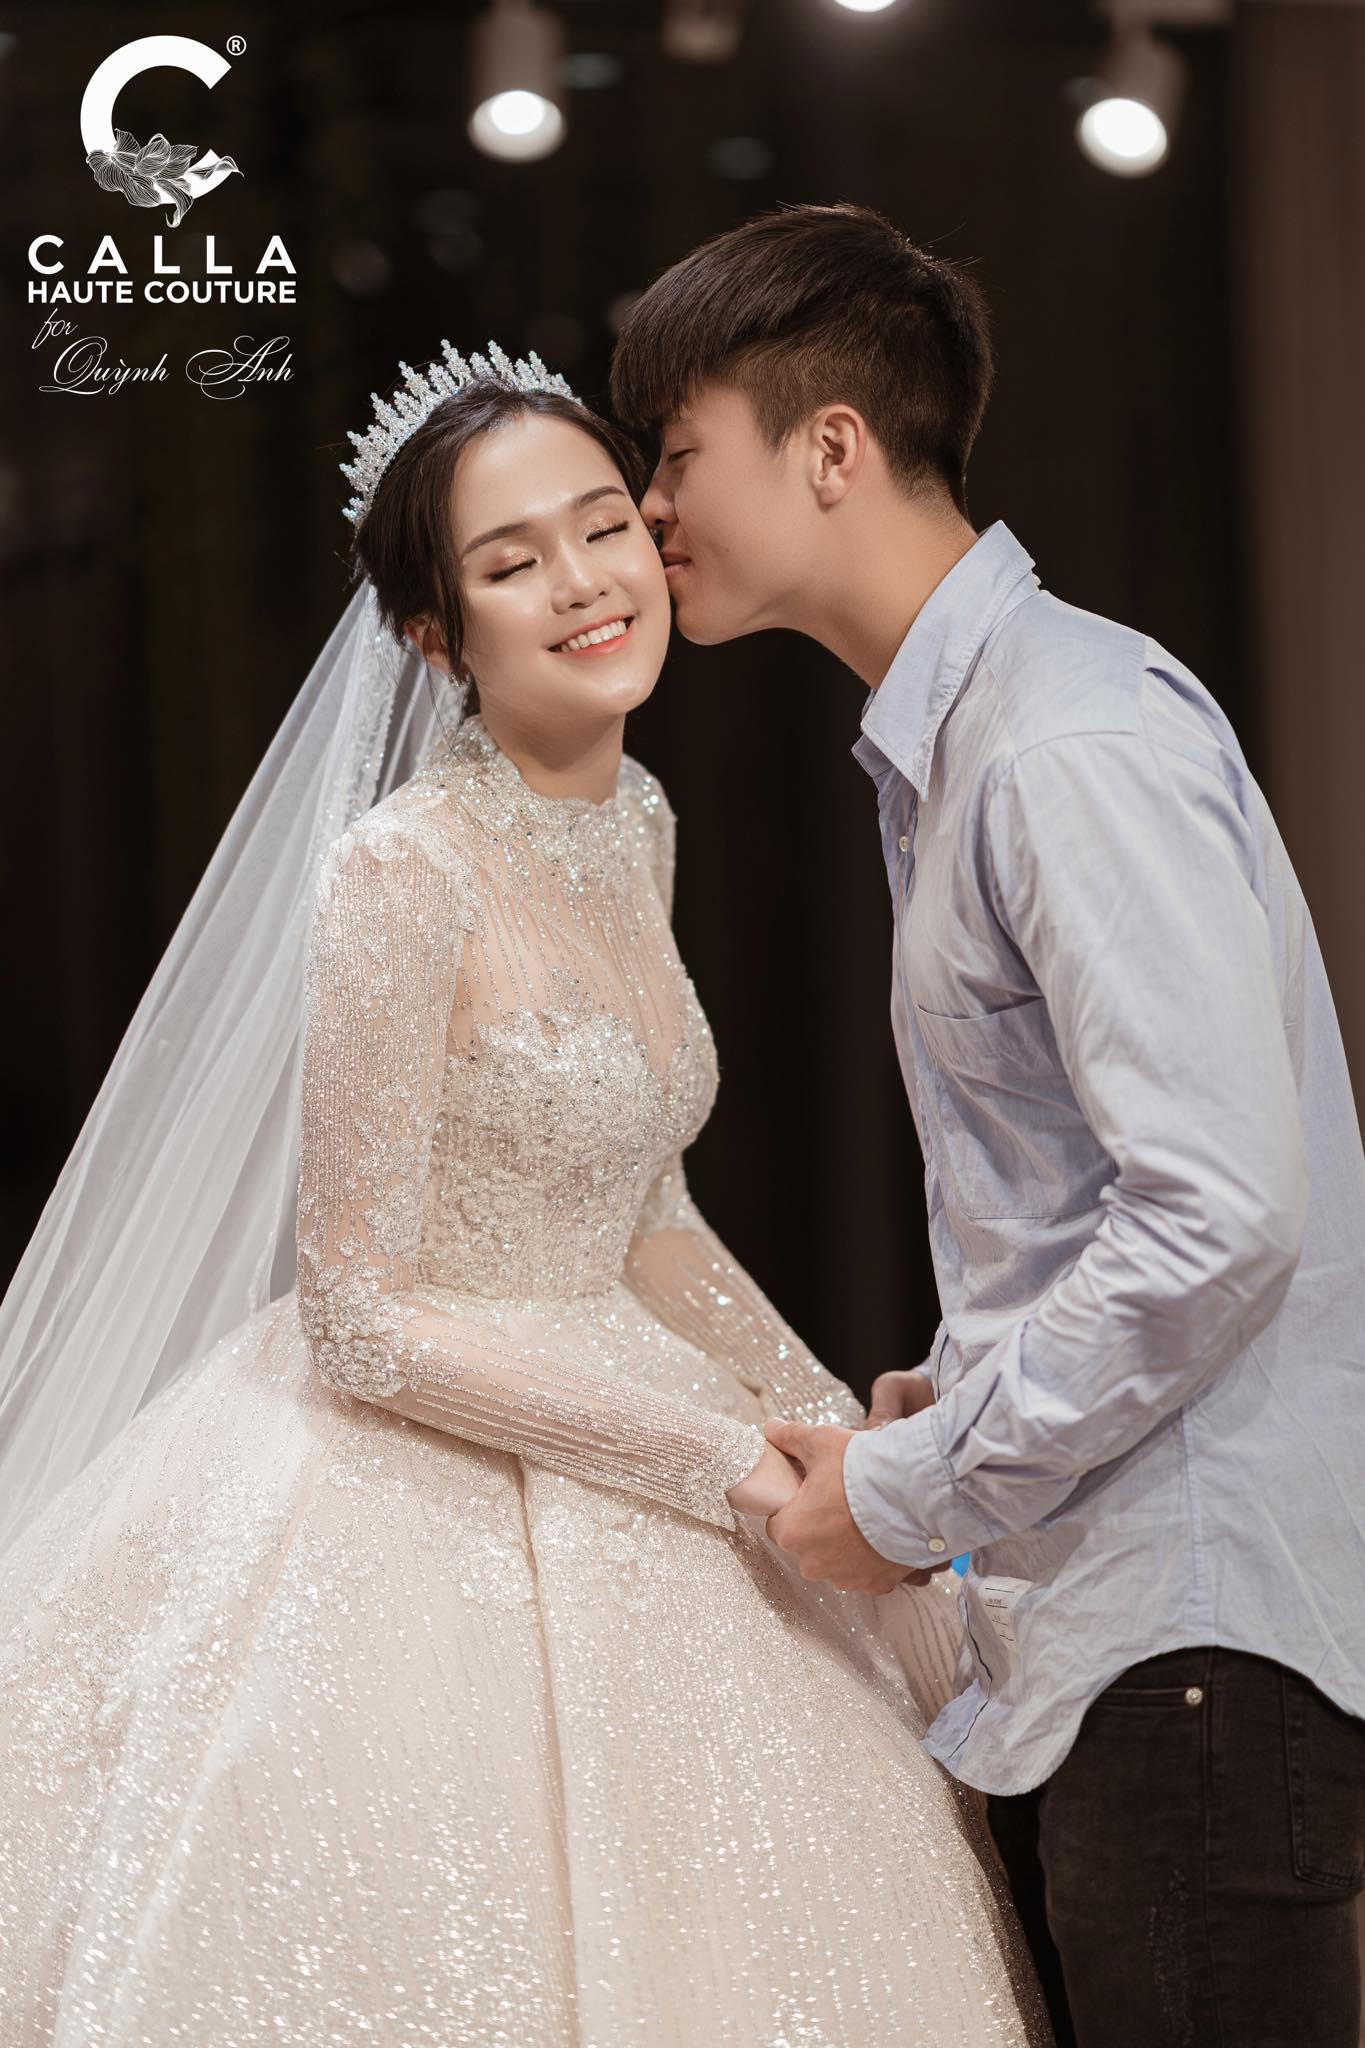 Ngắm lại 3 mẫu váy cưới trong mơ của vợ 3 cầu thủ Duy Mạnh - Thành Chung - Tấn Tài - Ảnh 11.